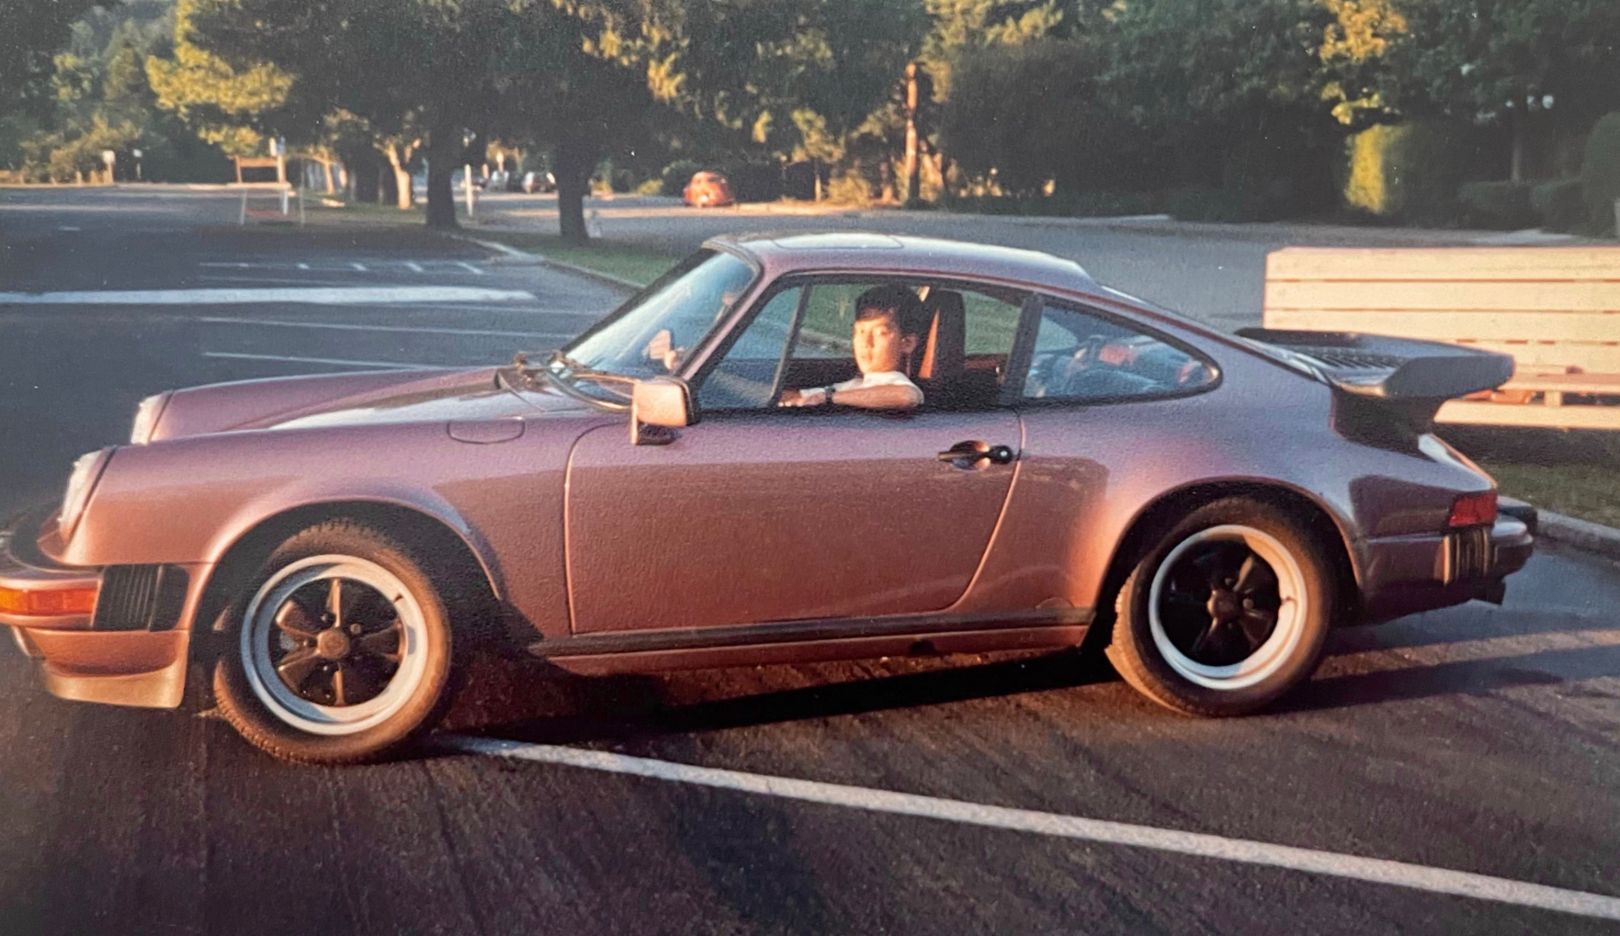 Sa première fois à bord de la Porsche 911 de son père – à l’école, le garçon de 12 ans brûlait d’impatience de faire la rencontre de la nouvelle voiture. C’est ce jour-là qu’est née la passion de Daniel Wu pour les voitures sportives et pour Porsche. 